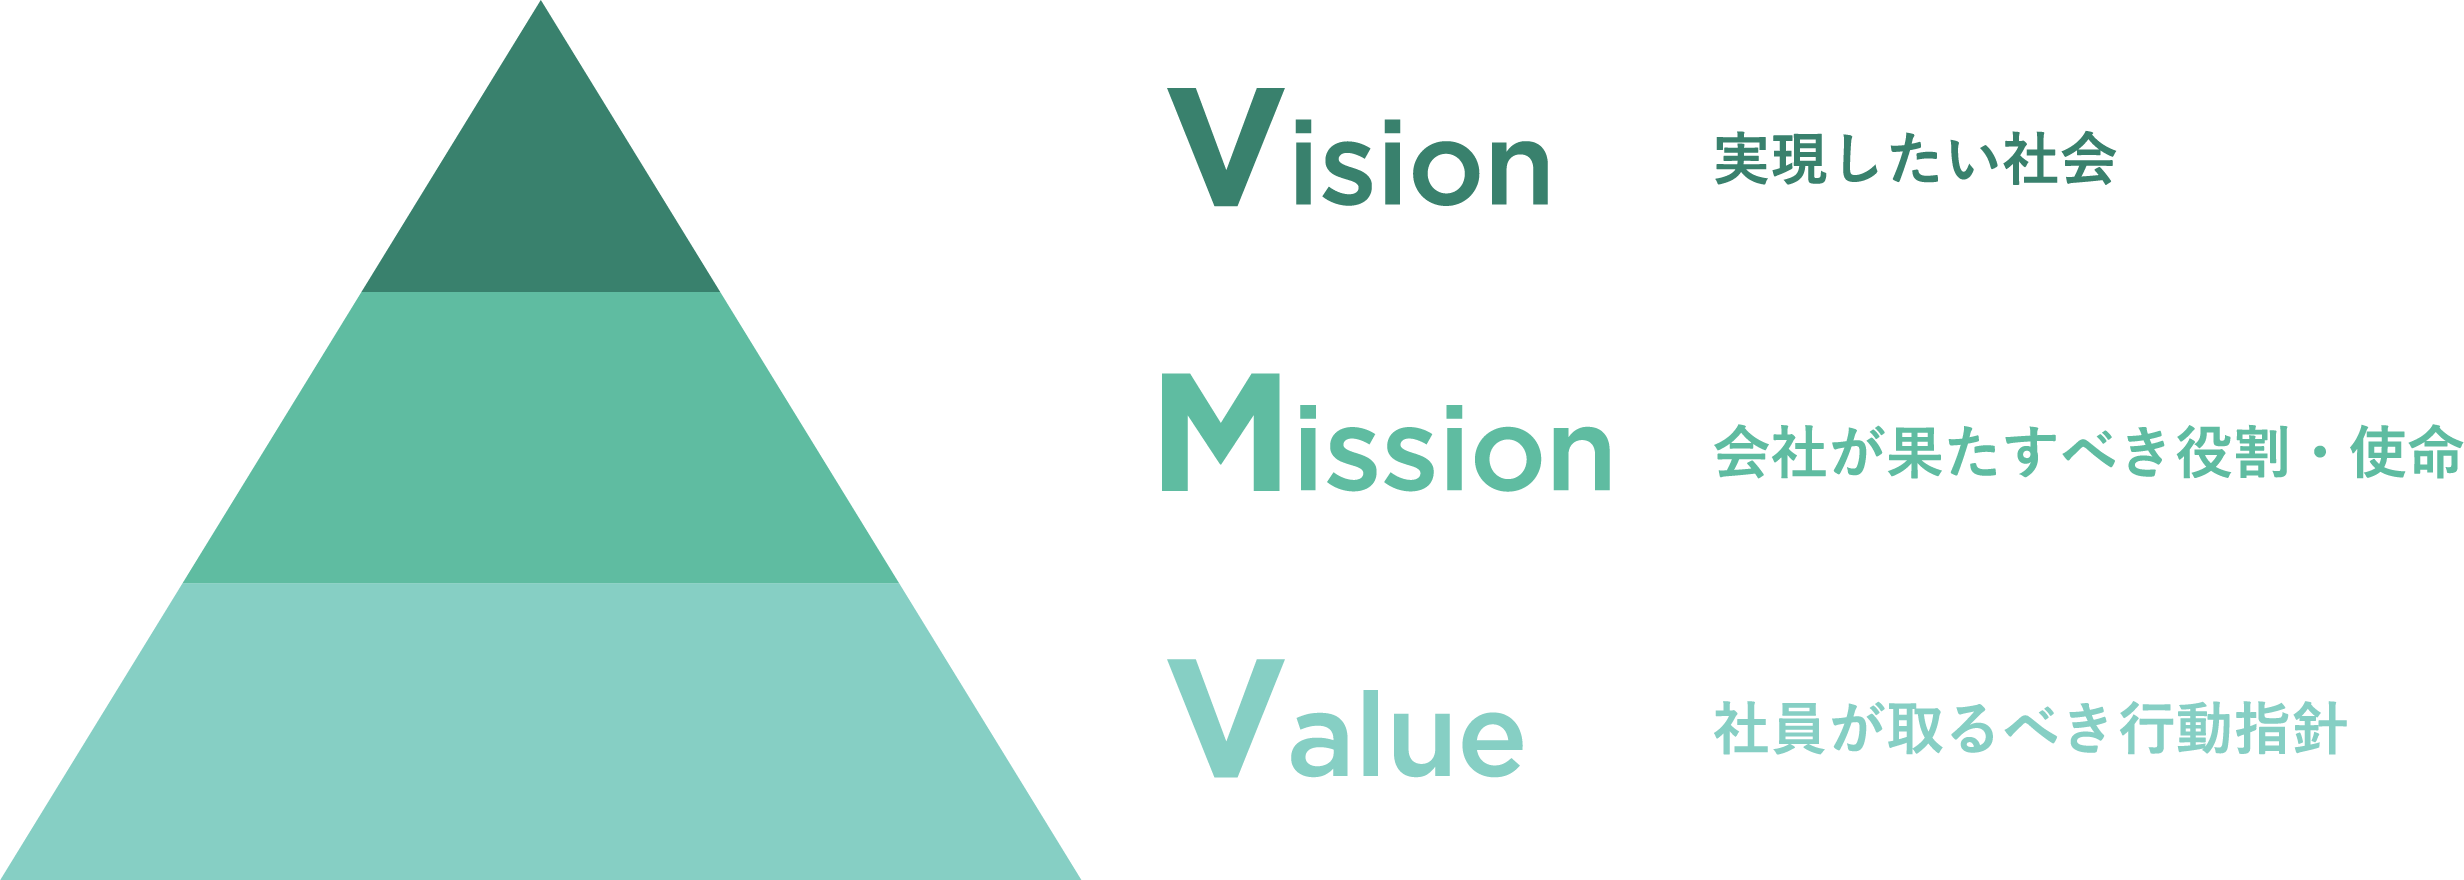 Vision 実現したい社会　Mission 会社が果たすべき役割・使命　Value 社員が取るべき行動指針